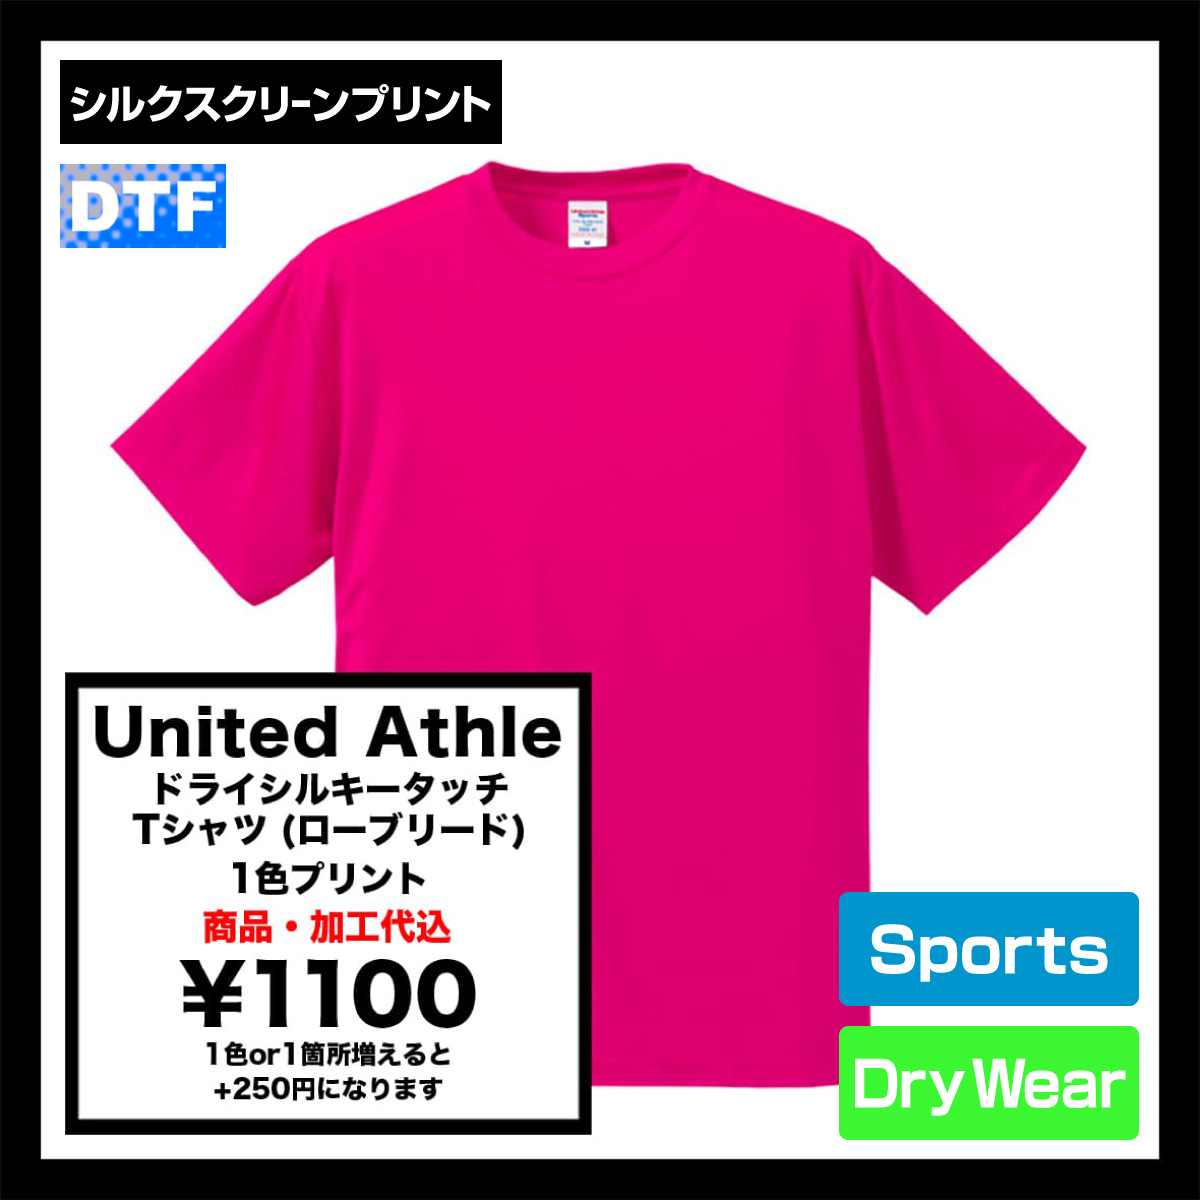 United Athle ユナイテッドアスレ 4.7 oz ドライシルキータッチ Tシャツ (ローブリード) (品番5088-01)